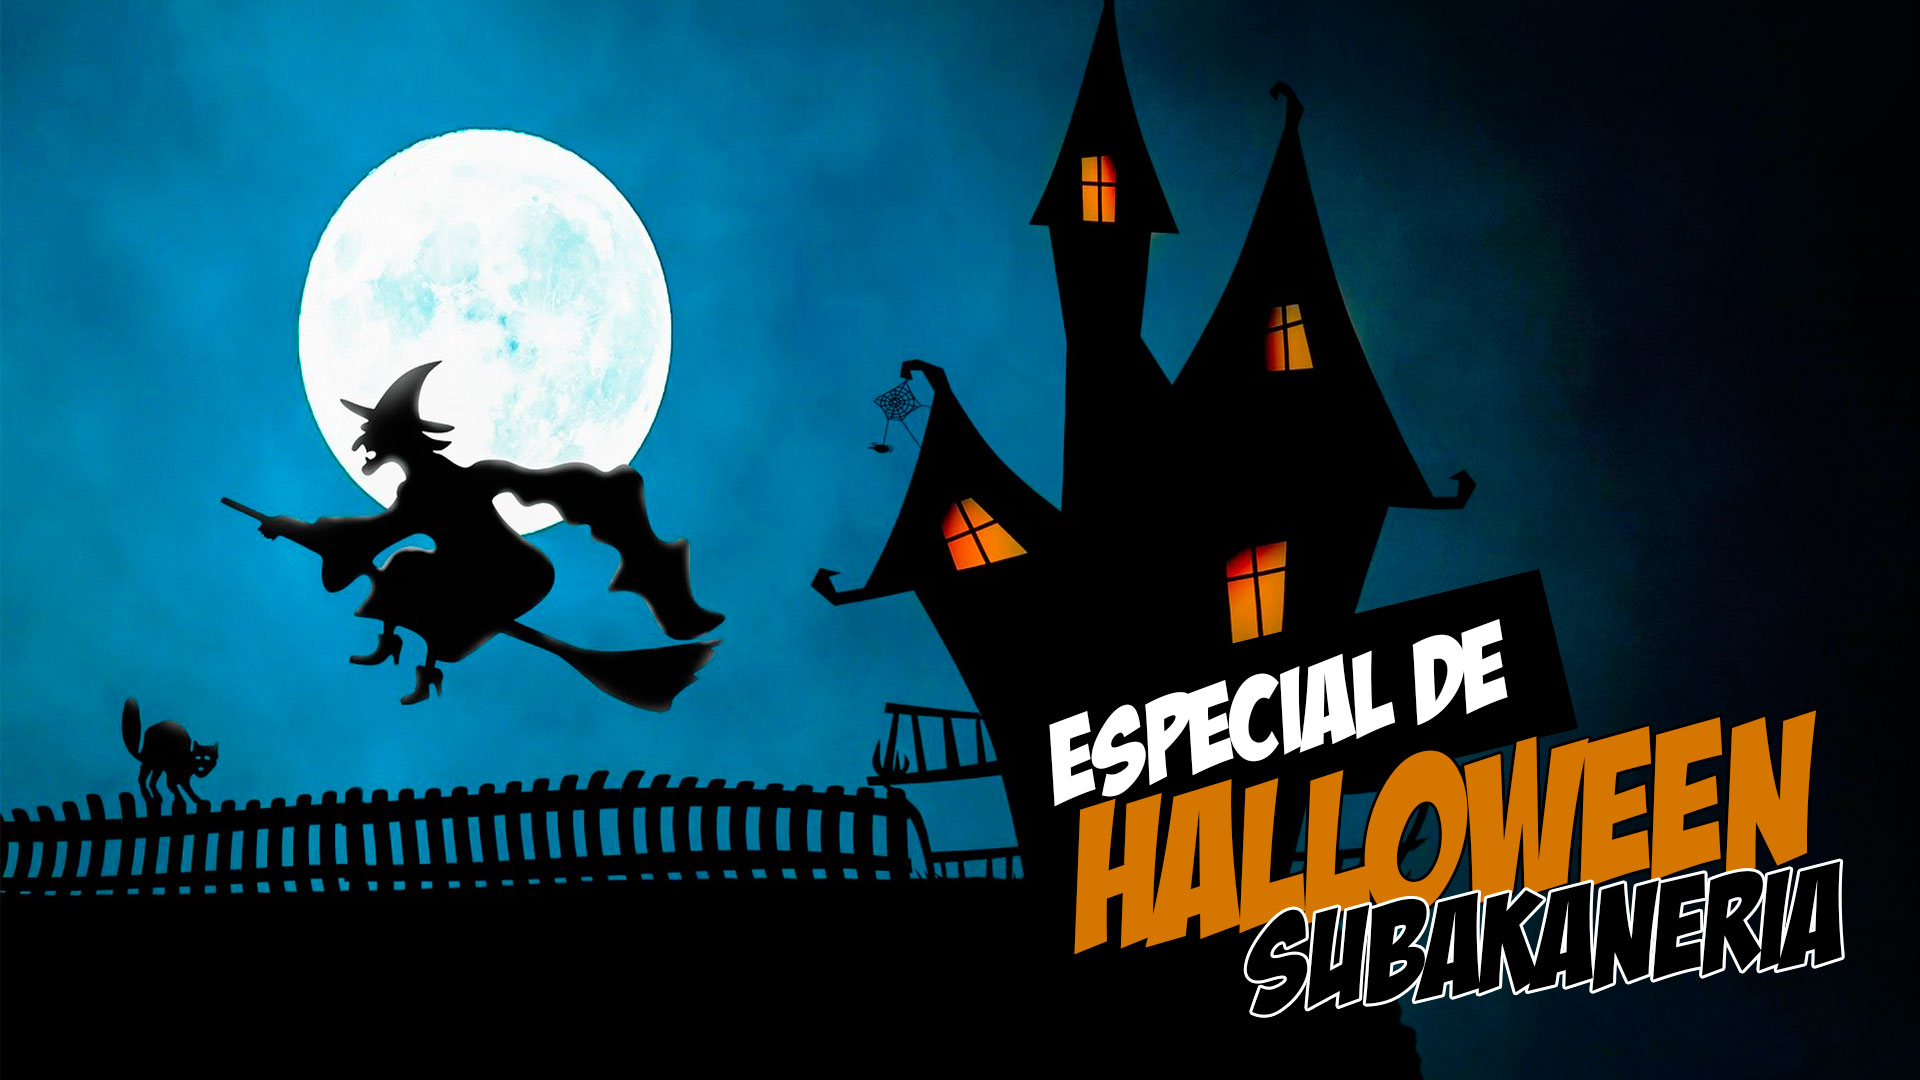 Halloween Subakaneria - Historias sobre espantos y fantasmas... Colegio Nueva Colombia